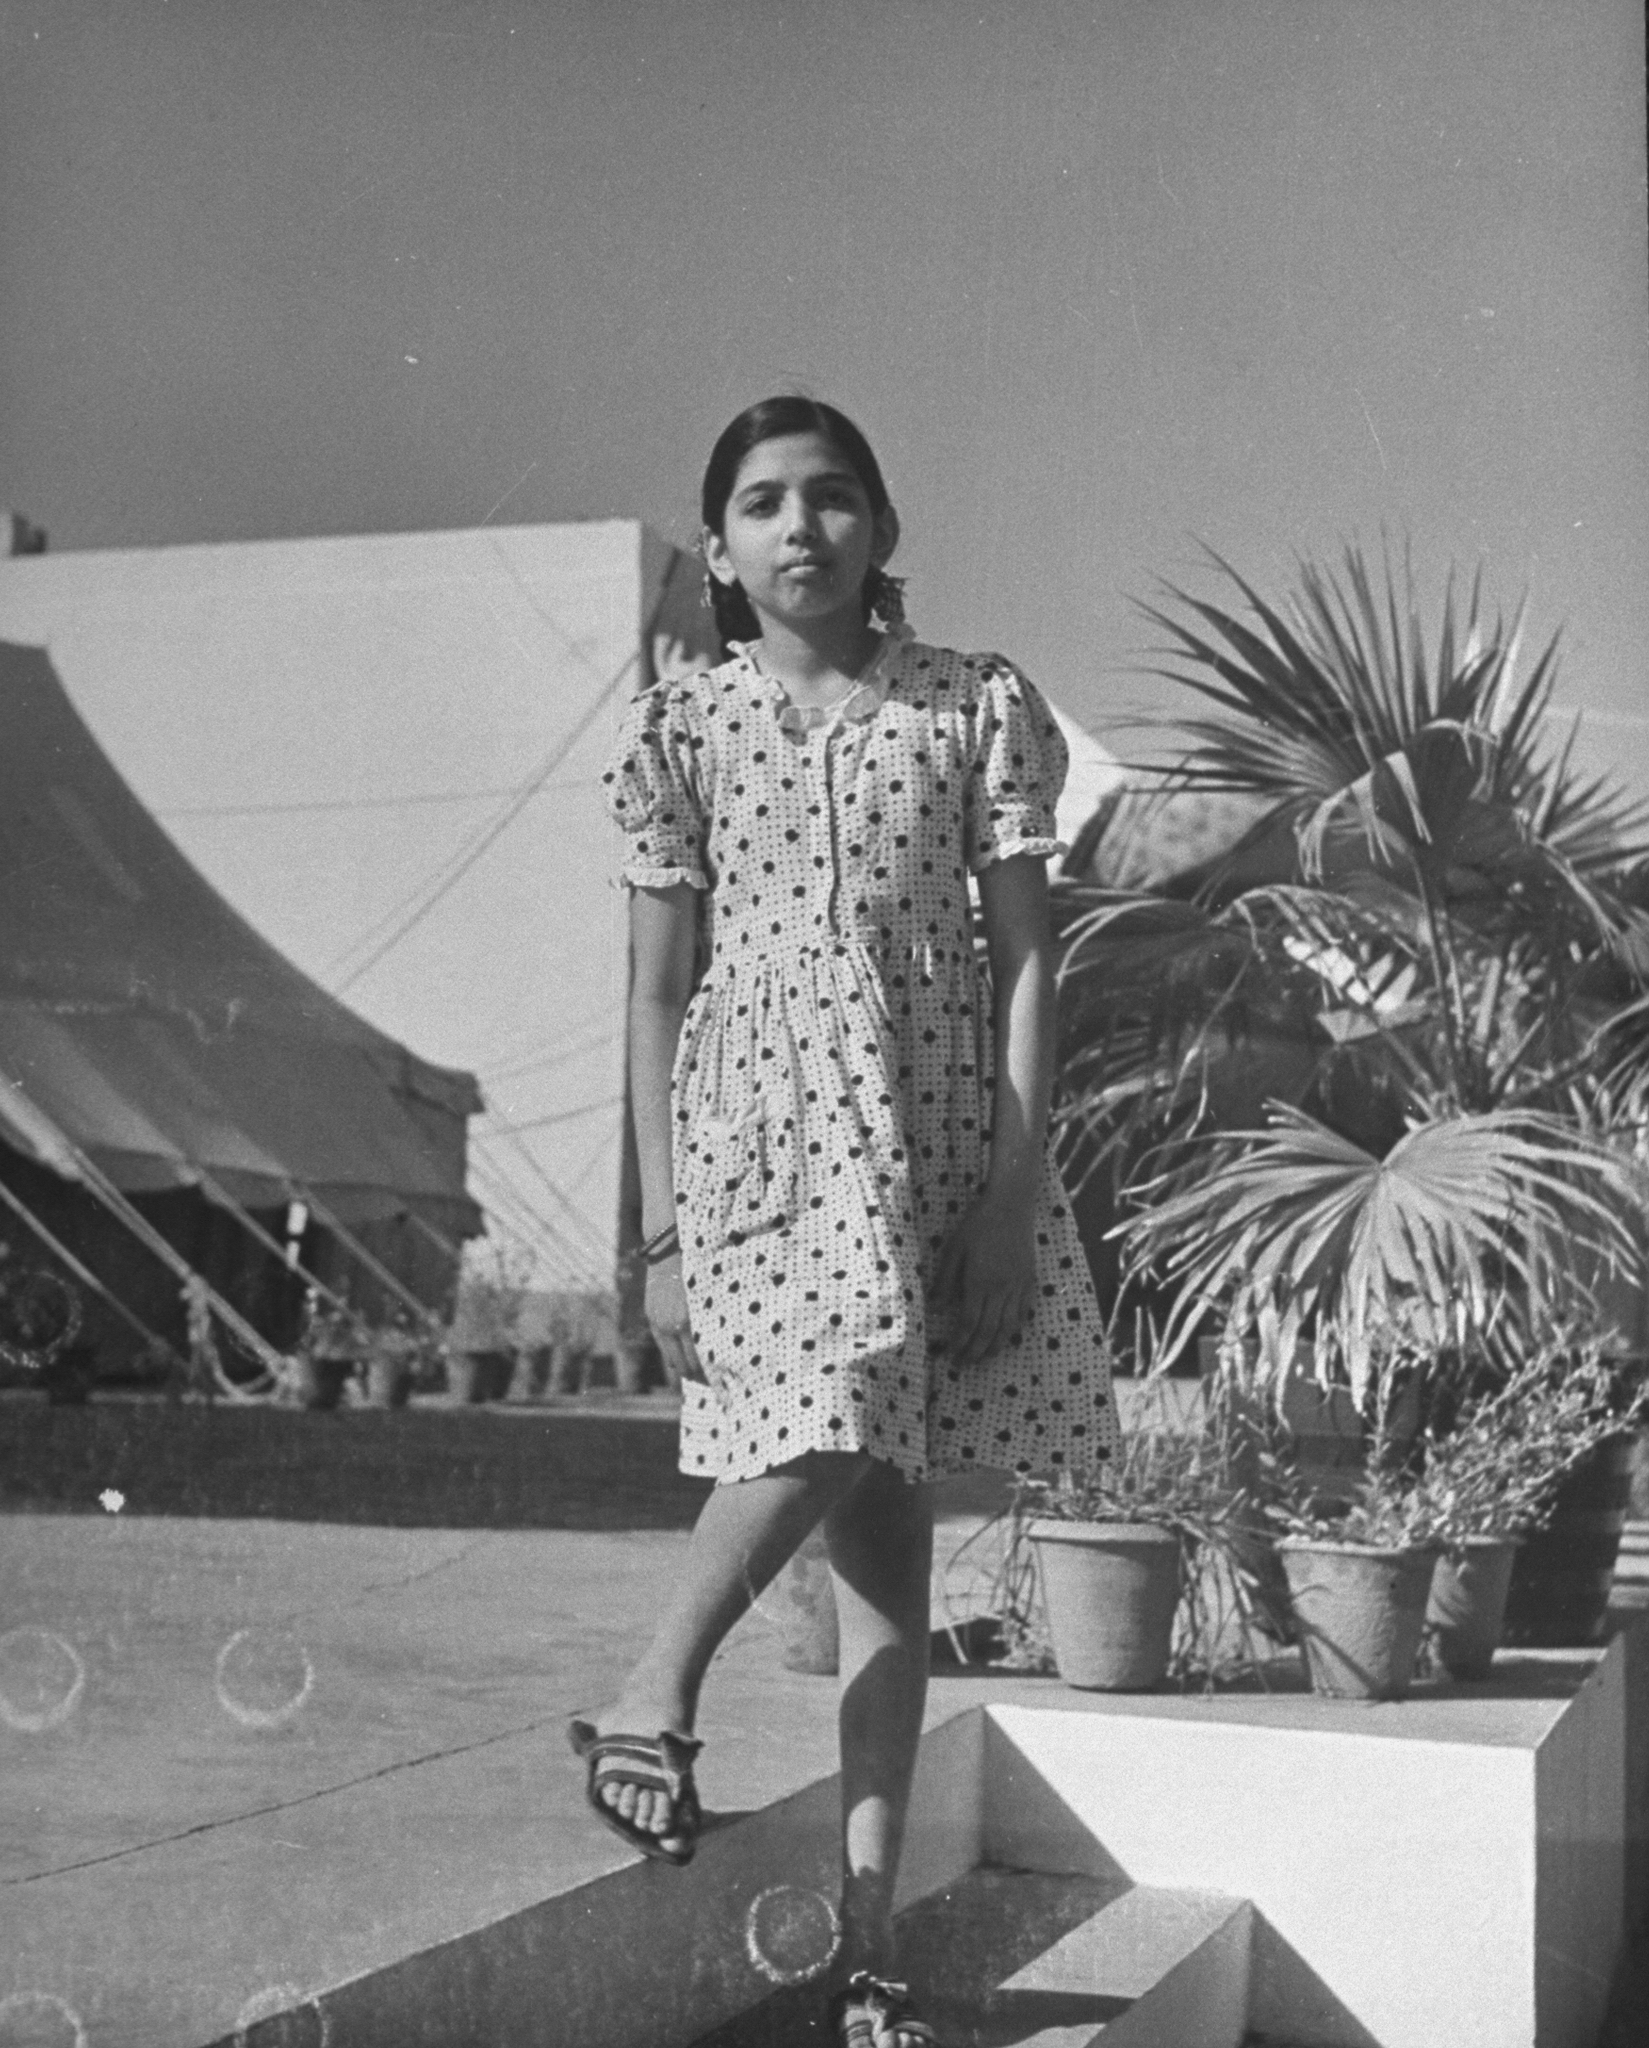 Picture of 13-year-old Tara Gandhi, Gandhi's granddaughter